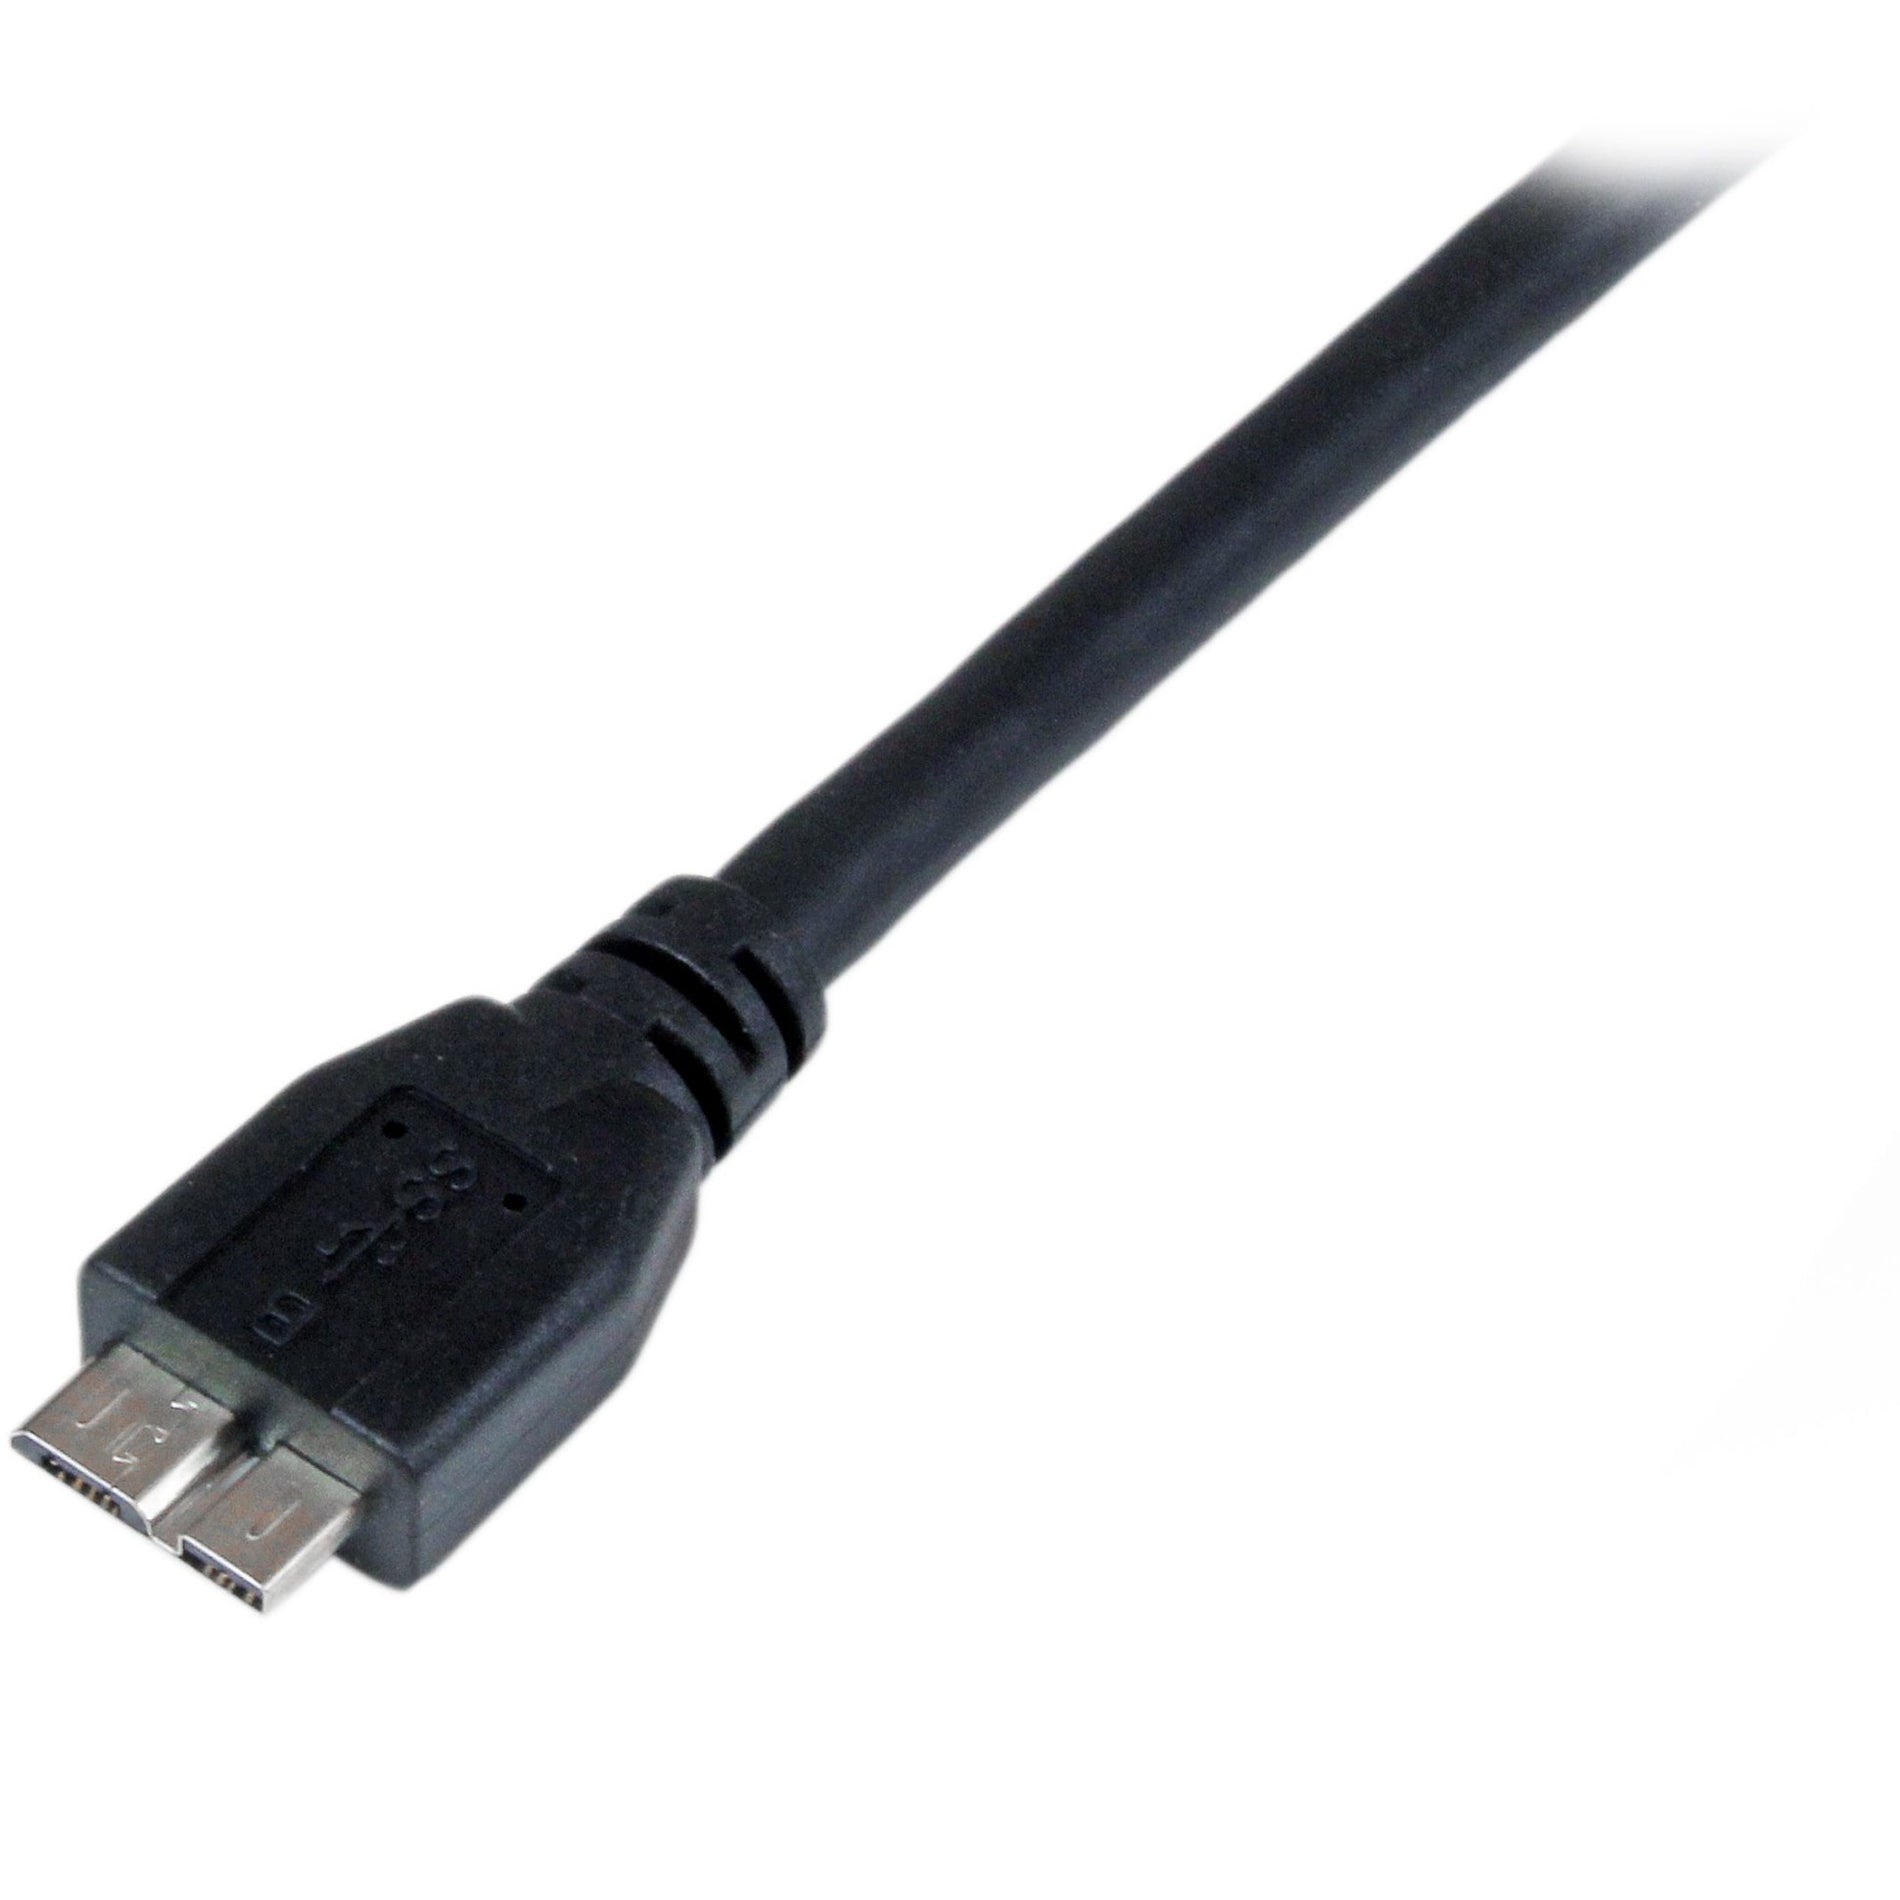 مدخل بالفعل USB 3.0 معتمد على StarTech.com كبل USB3CAUB1M 1m SuperSpeed للبيانات A إلى B ميكرو - M / M ، كبل نقل البيانات 3 أقدام ، معدل نقل البيانات 5 جيجابت في الثانية ، إغاظة الإجهاد ، مصبوب   ستارتك.كوم